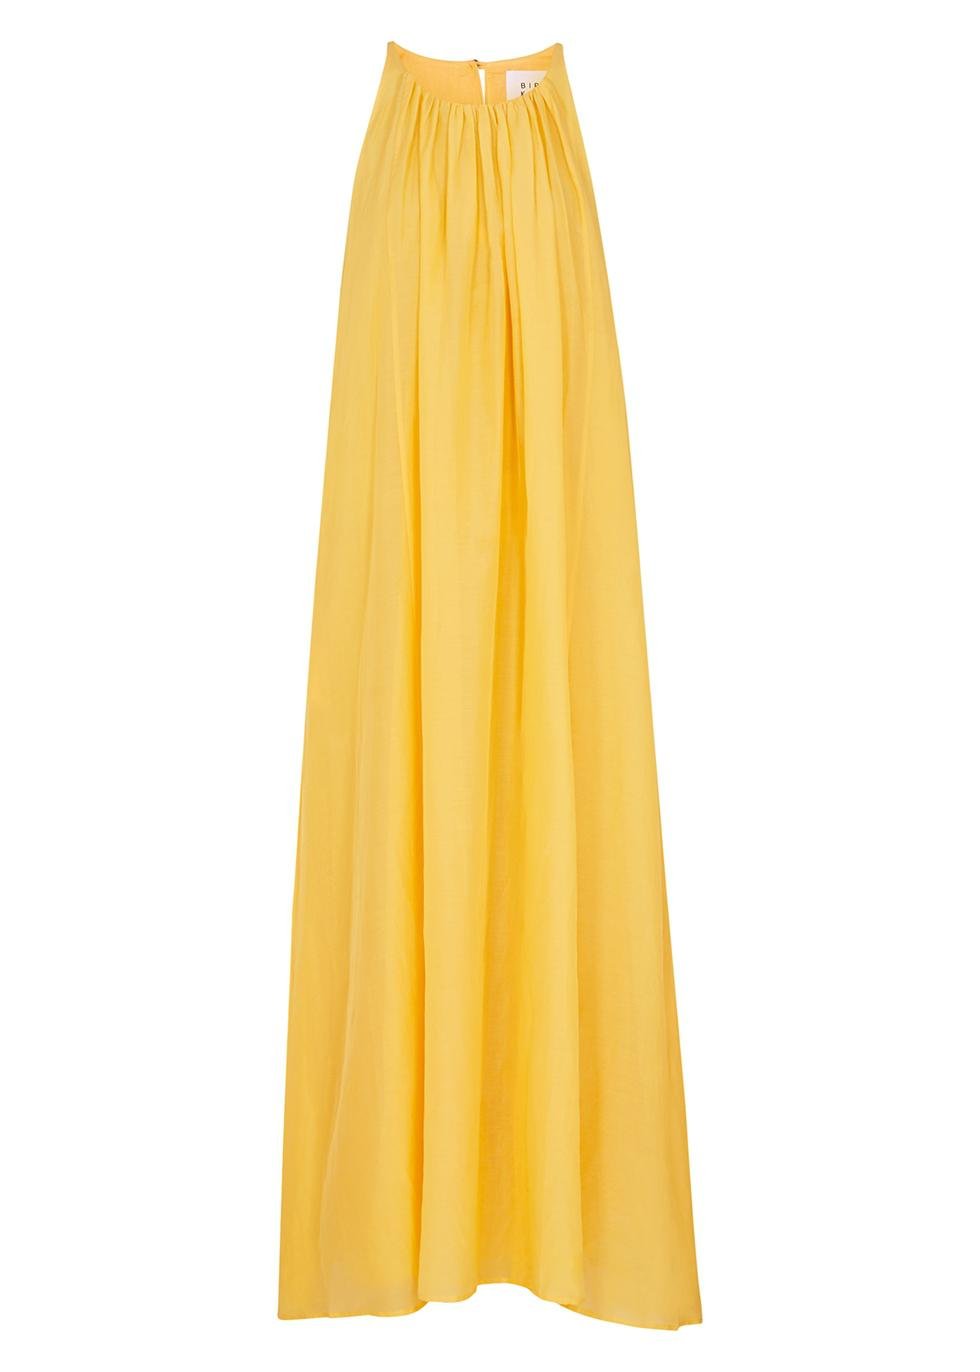 Matisse yellow cotton-blend maxi dress by BIRD&KNOLL